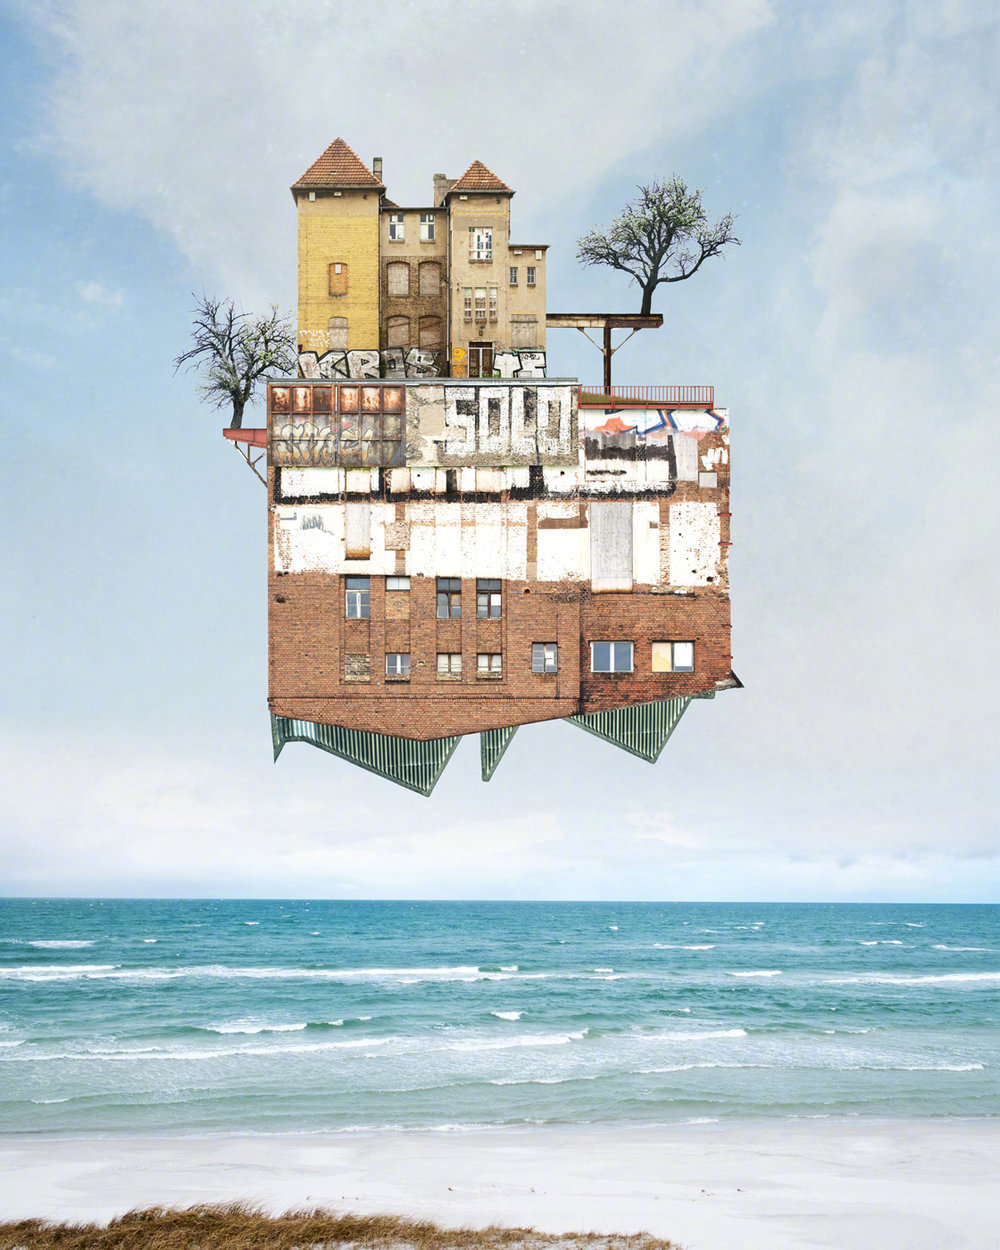 德国艺术家 matthias jung 超现实主义建筑拼贴作品,matthias jung将